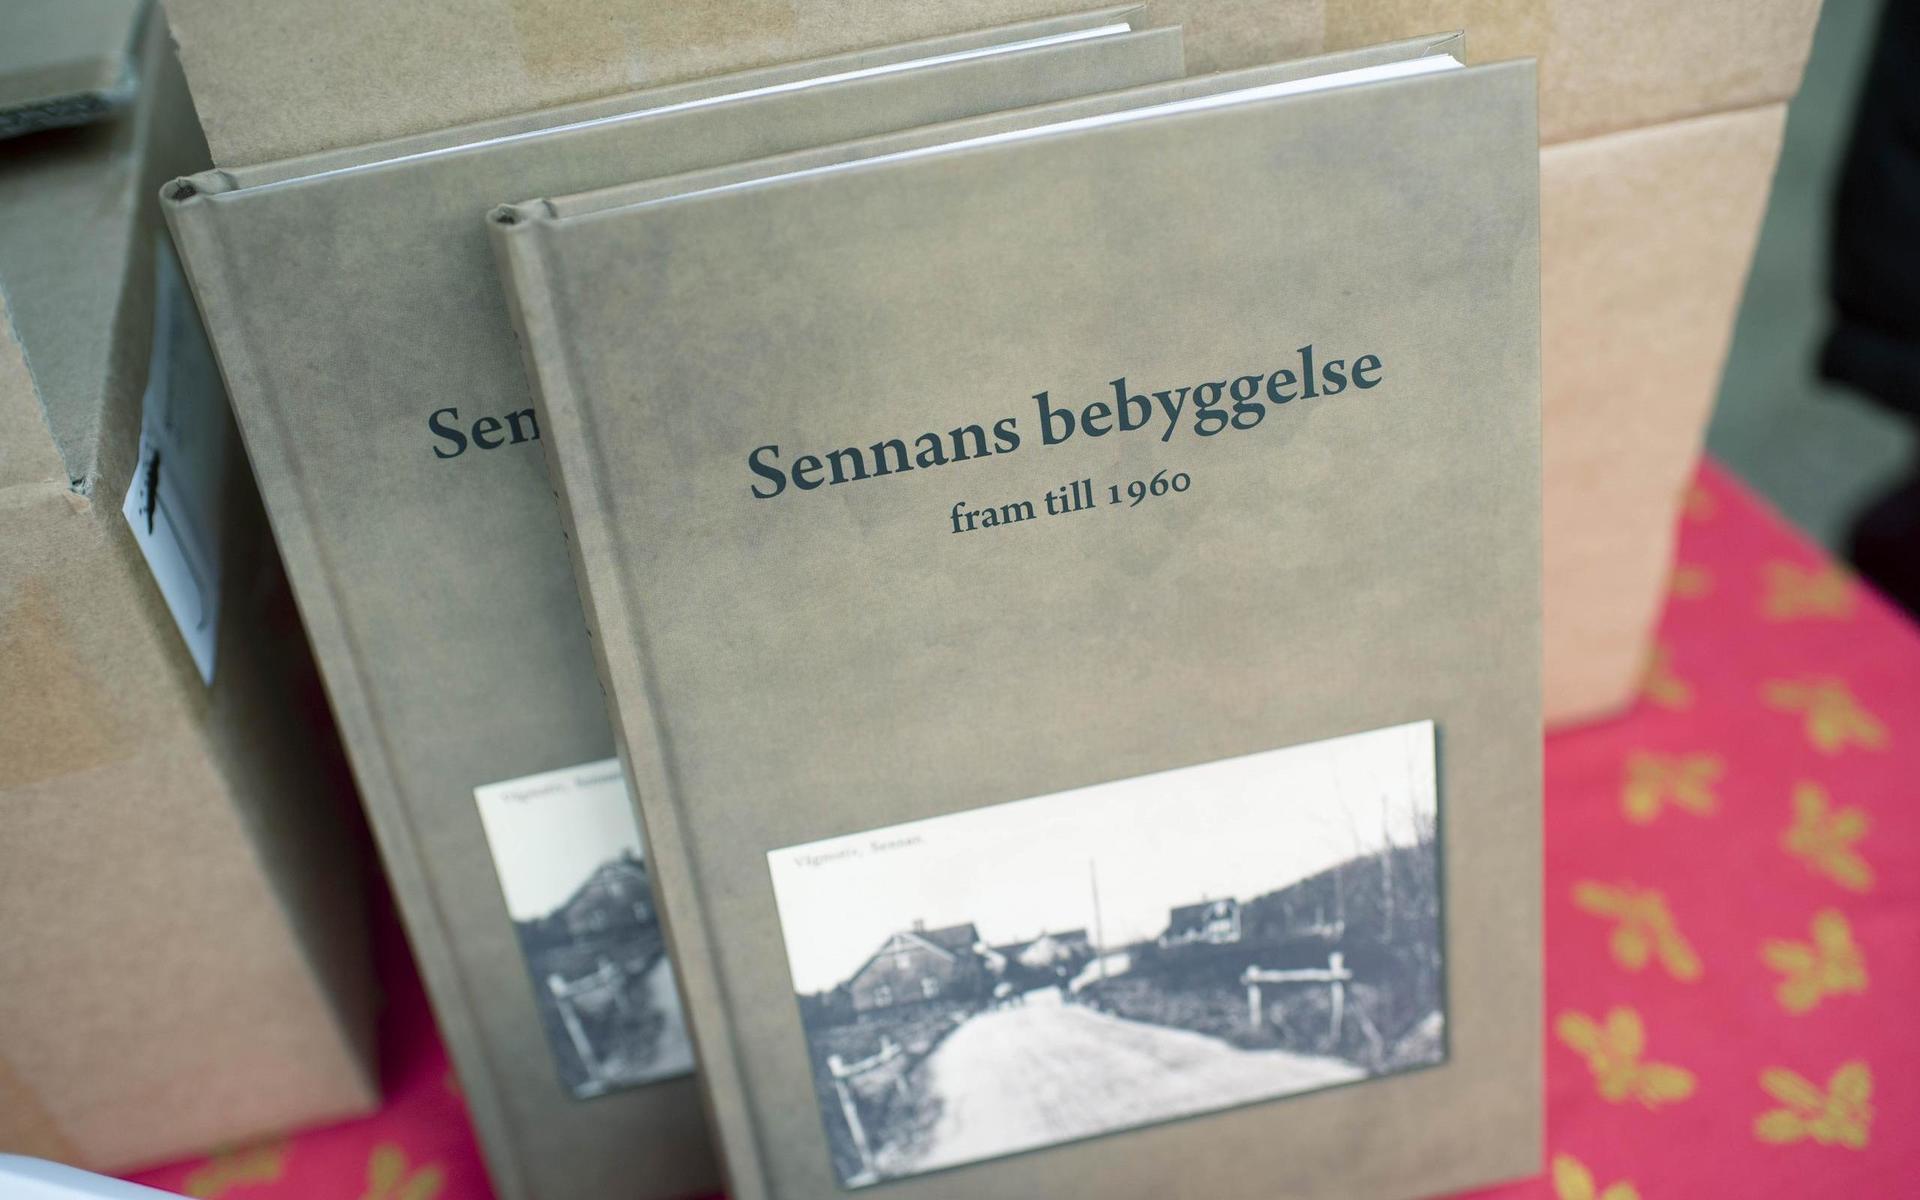 Sennans bebyggelse visar bilder på hus från till 1960. I boken presenteras också en viss historia kring huset. 